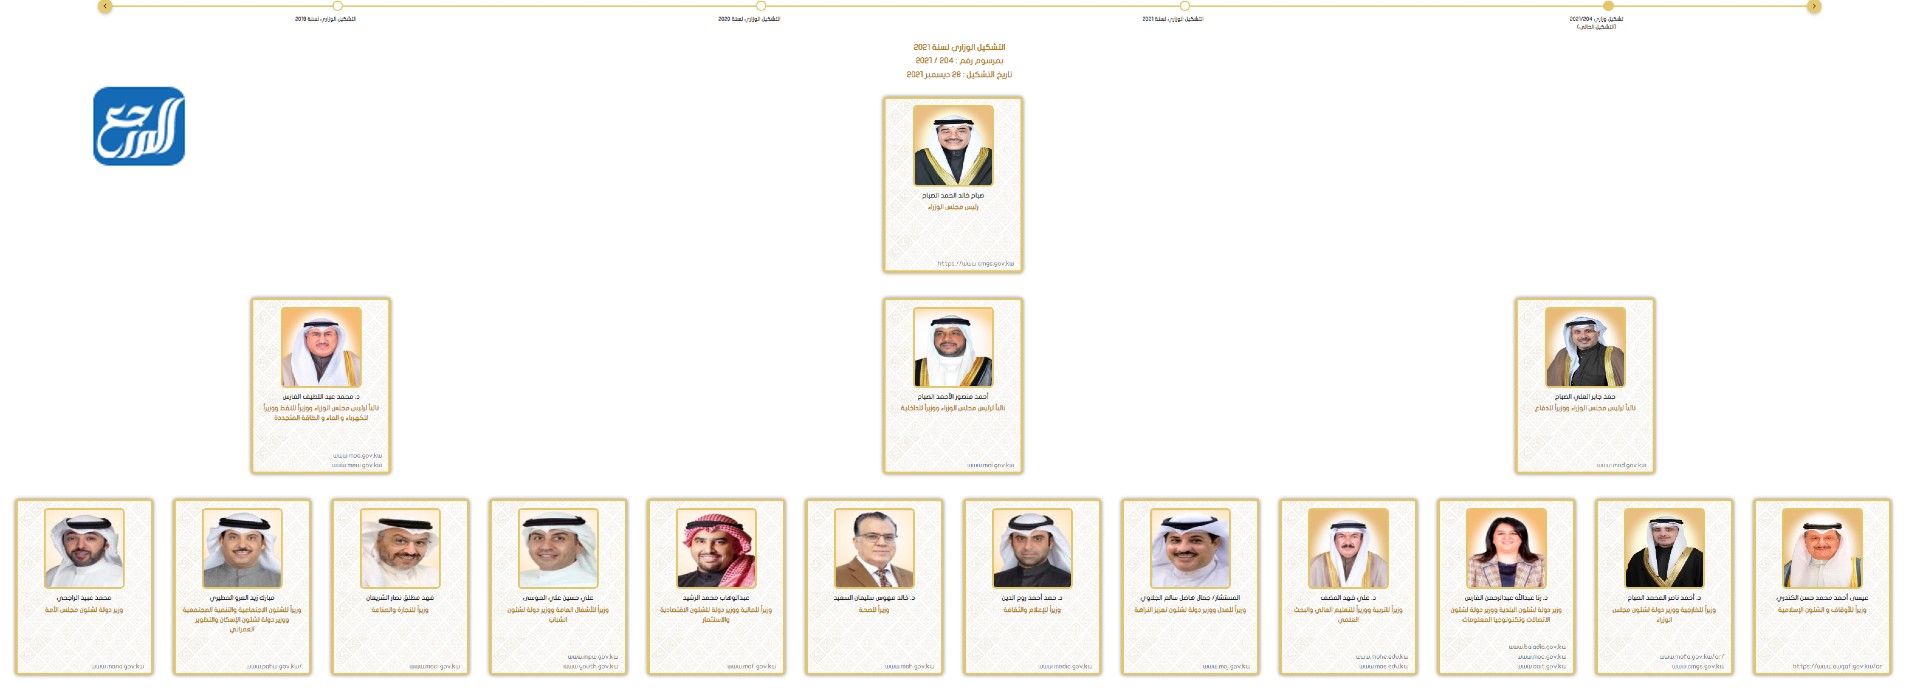 اسماء تشكيلة الحكومة الكويتية الجديدة